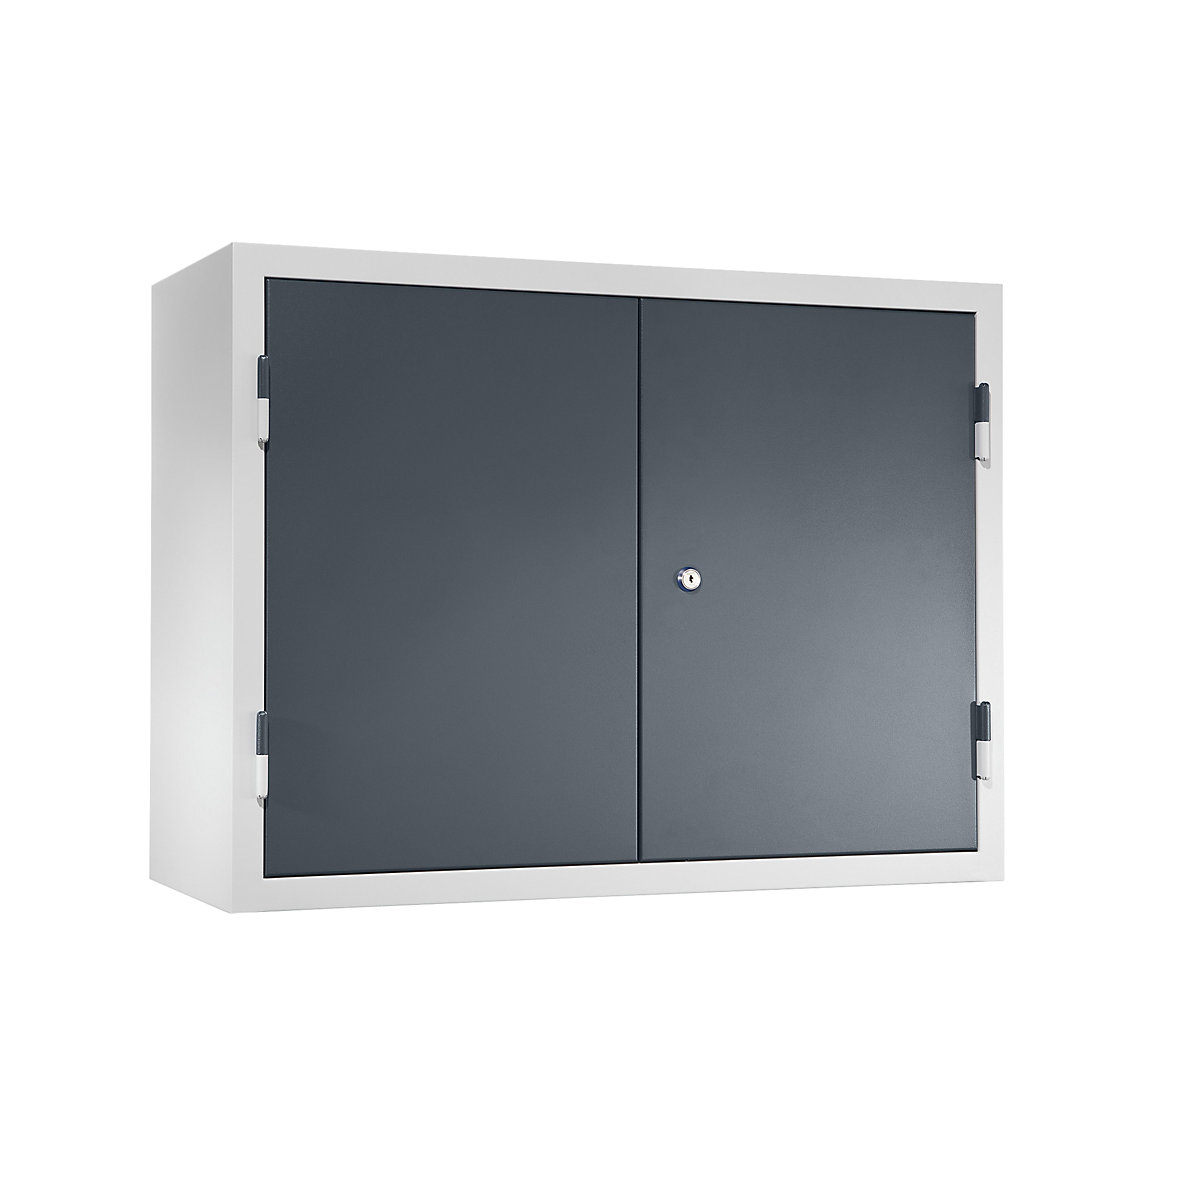 Werkplaatshangkast – eurokraft basic, h x b x d = 600 x 800 x 320 mm, deuren van dicht plaatstaal, basaltgrijs RAL 7012-7